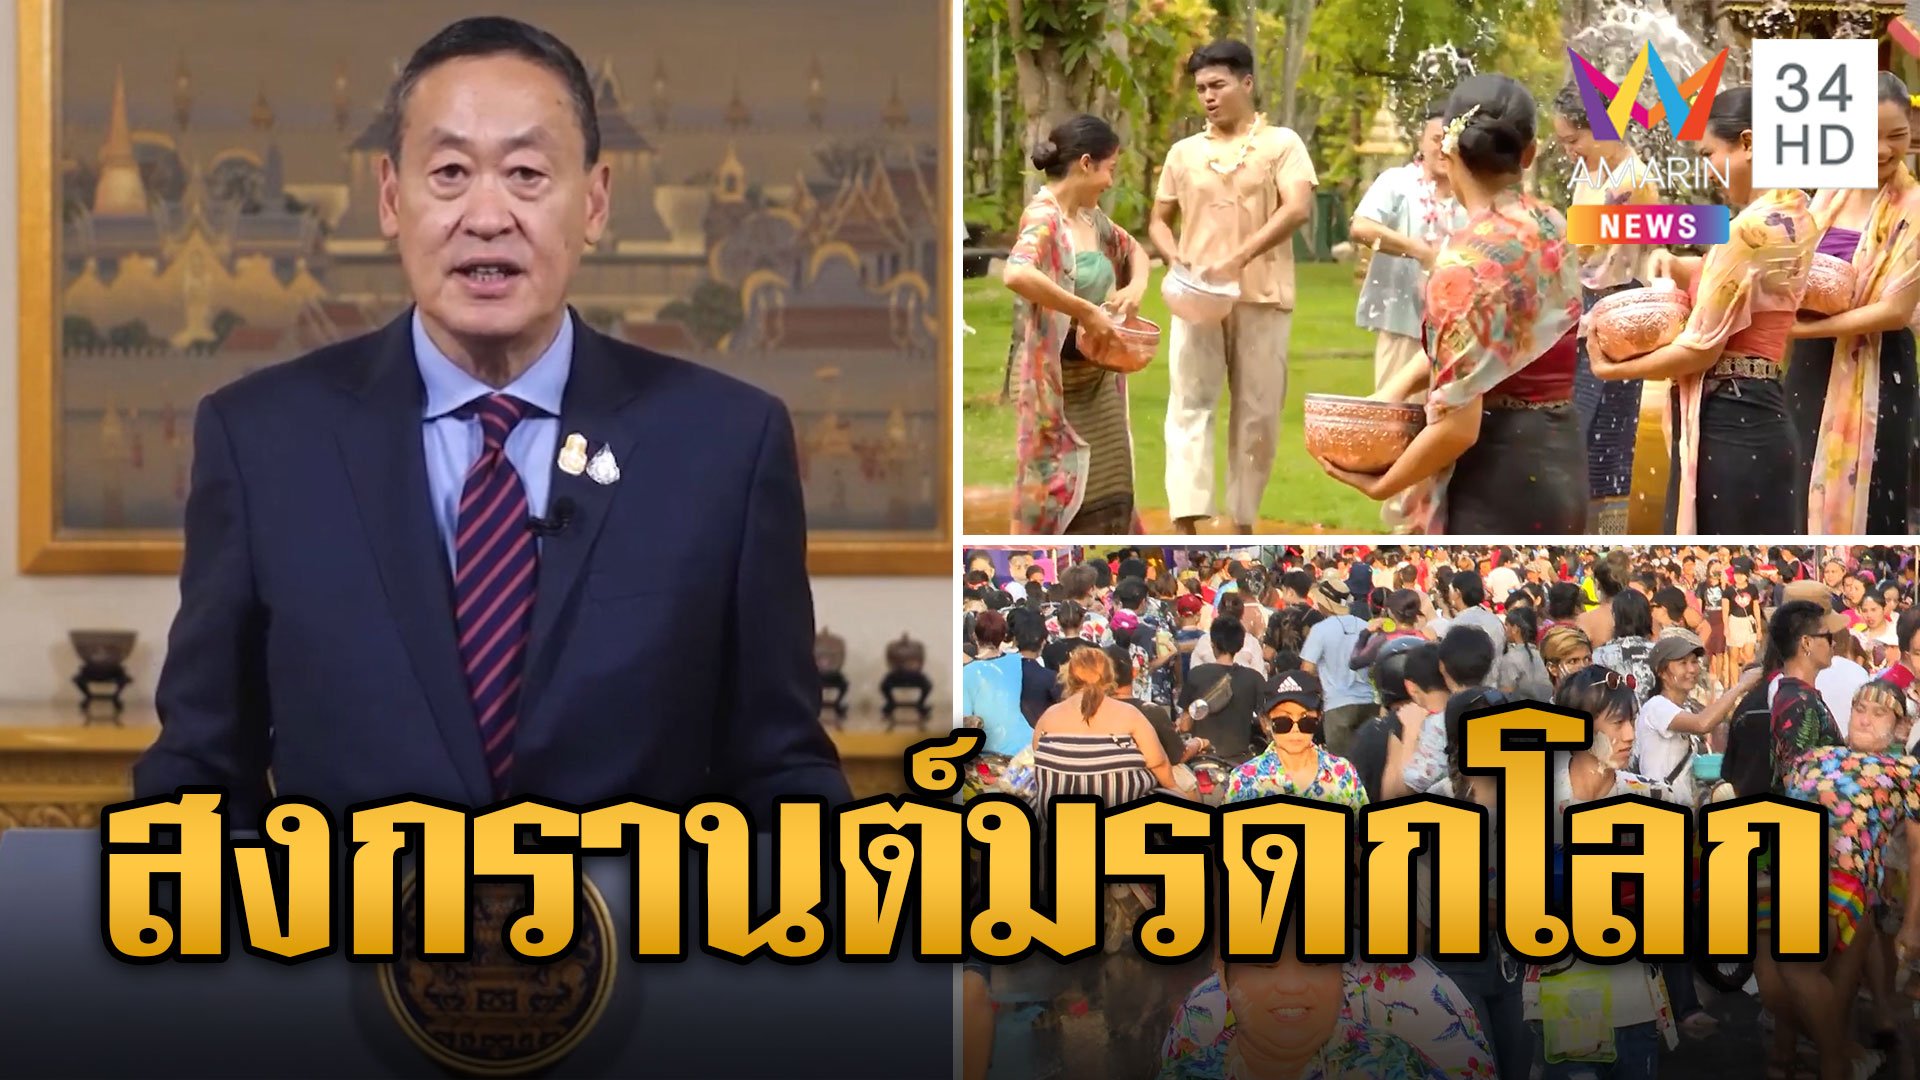 คนไทยเฮ! ยูเนสโกประกาศ "สงกรานต์ไทย" เป็นมรดกโลก นายกฯ เล็งจัดงาน EDM  | ข่าวอรุณอมรินทร์ | 7 ธ.ค. 66 | AMARIN TVHD34